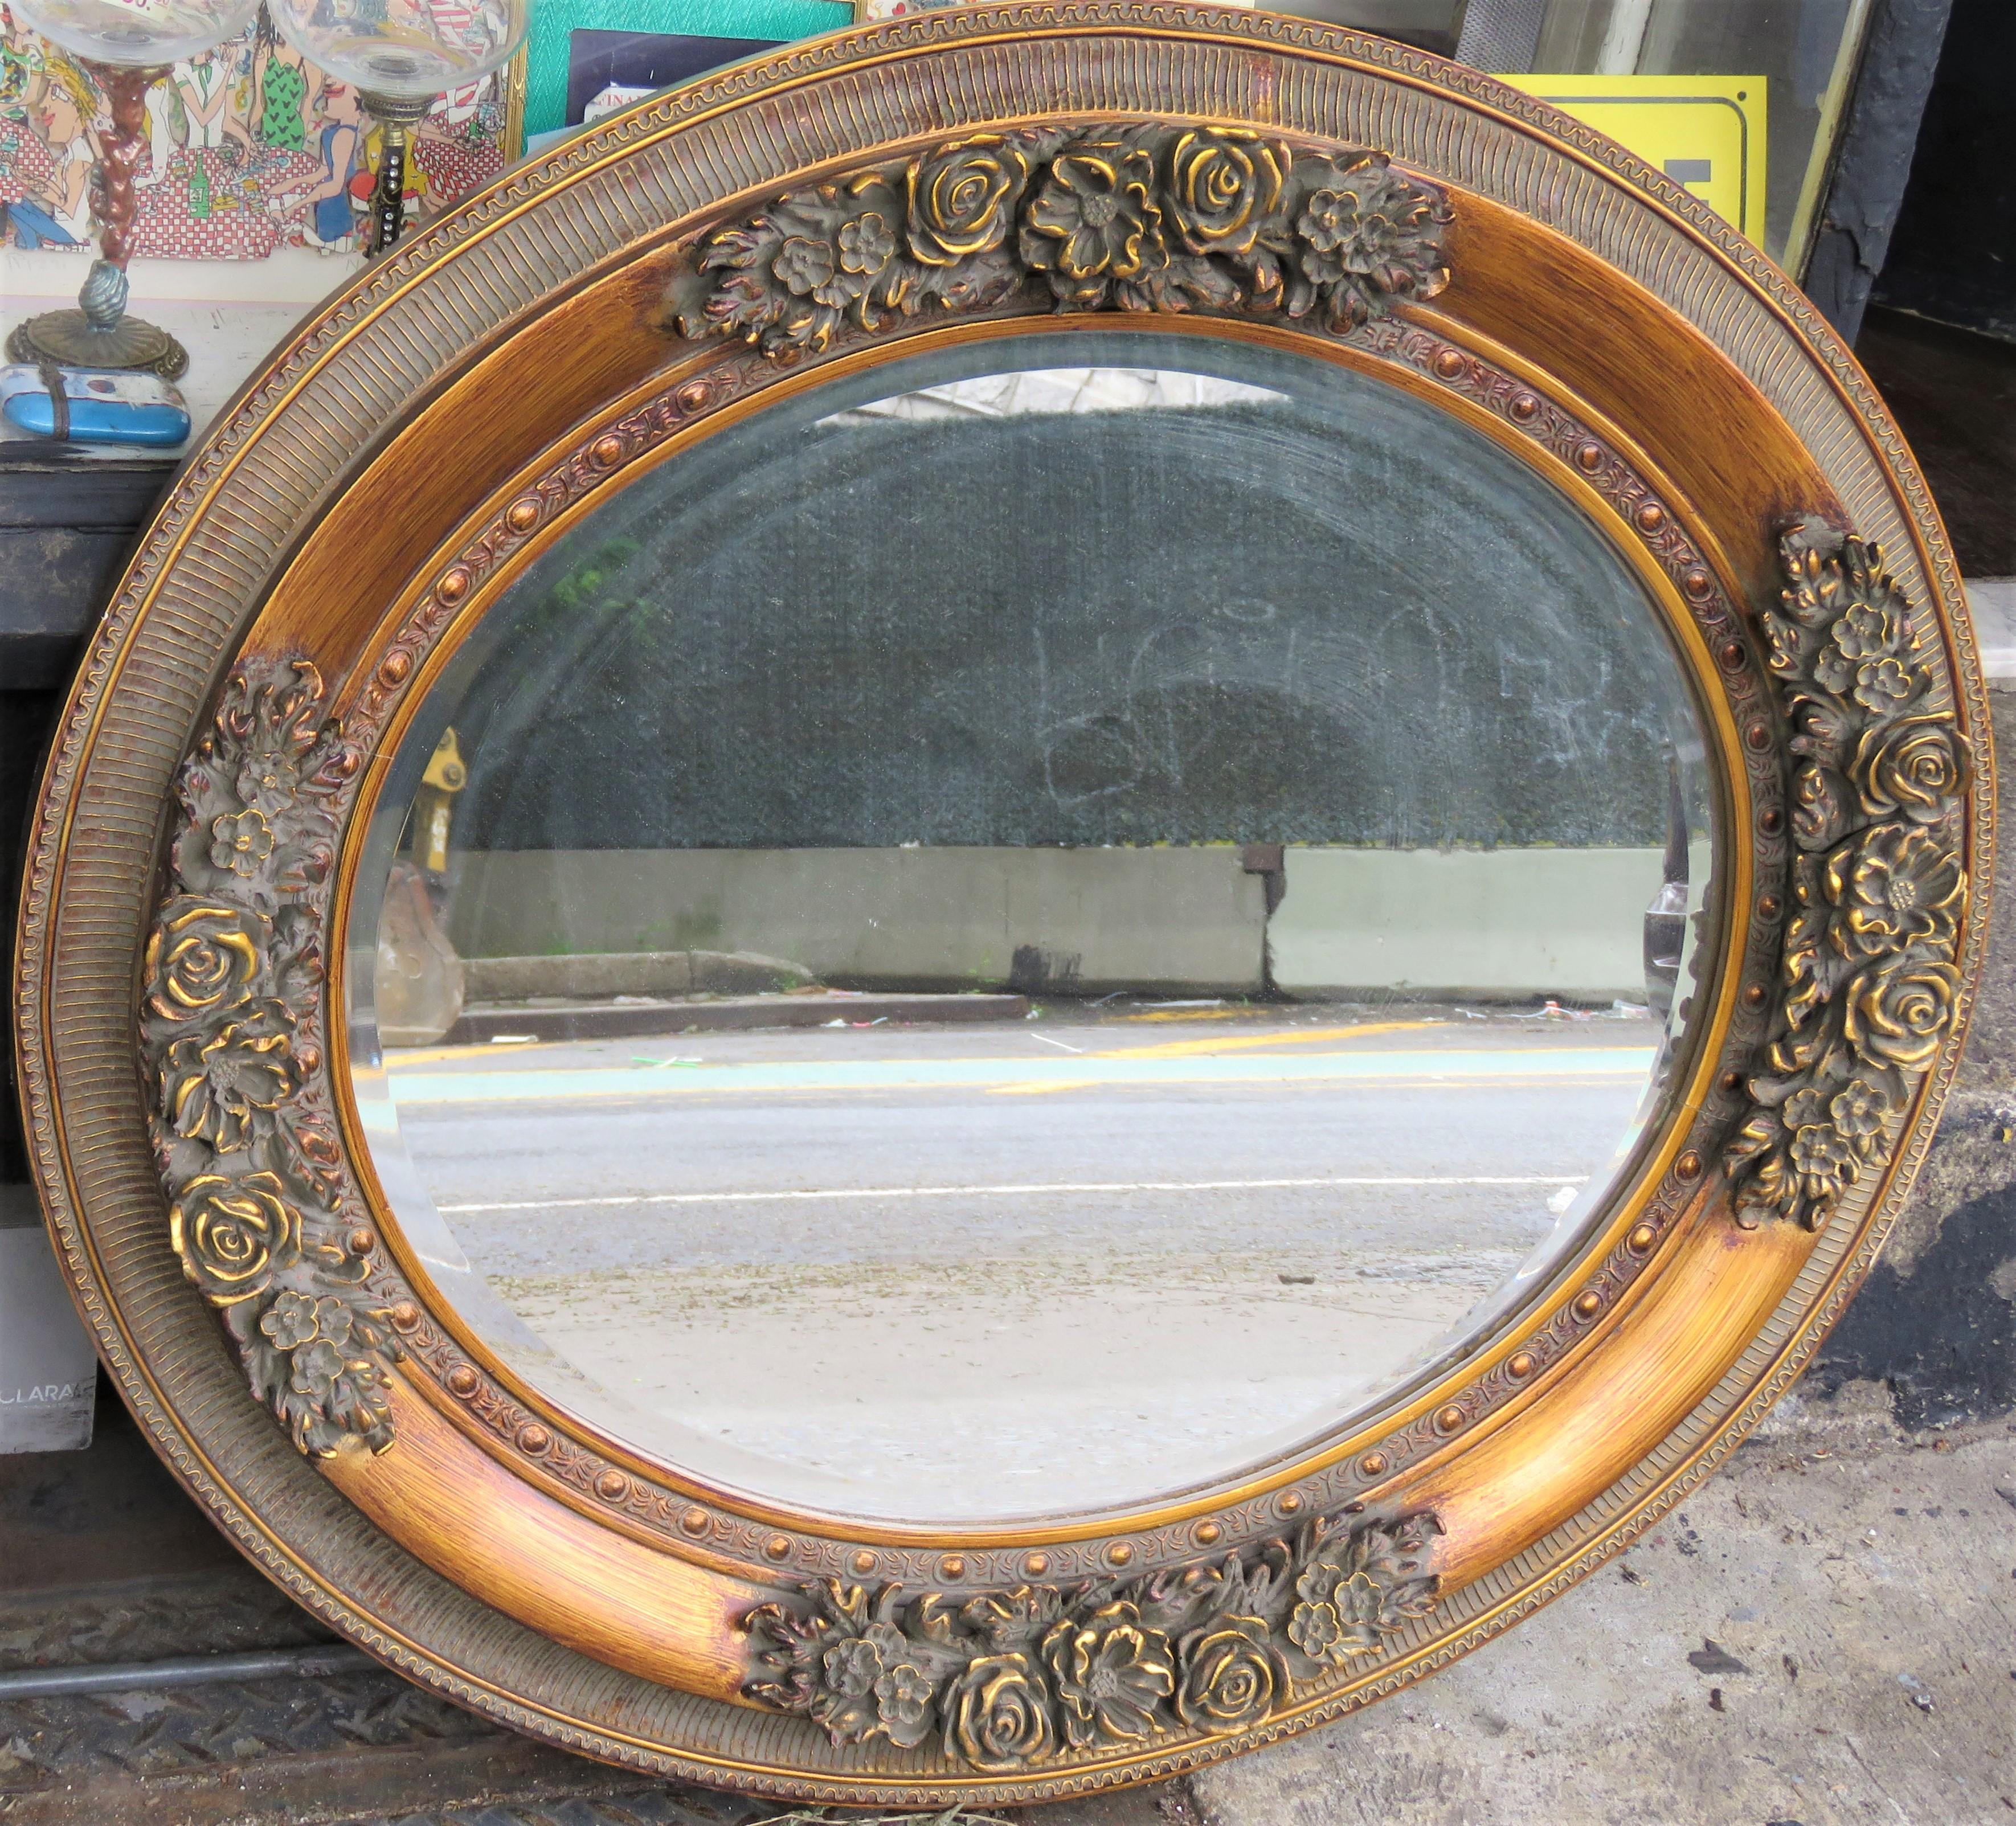 L'article suivant que nous offrons est un Rare Important Spectaculaire Estate Large Wooden French Flower Mirror (miroir à fleurs français en bois sculpté). Le miroir est sculpté de fleurs exquises et élaborées. Cette pièce provient d'une importante